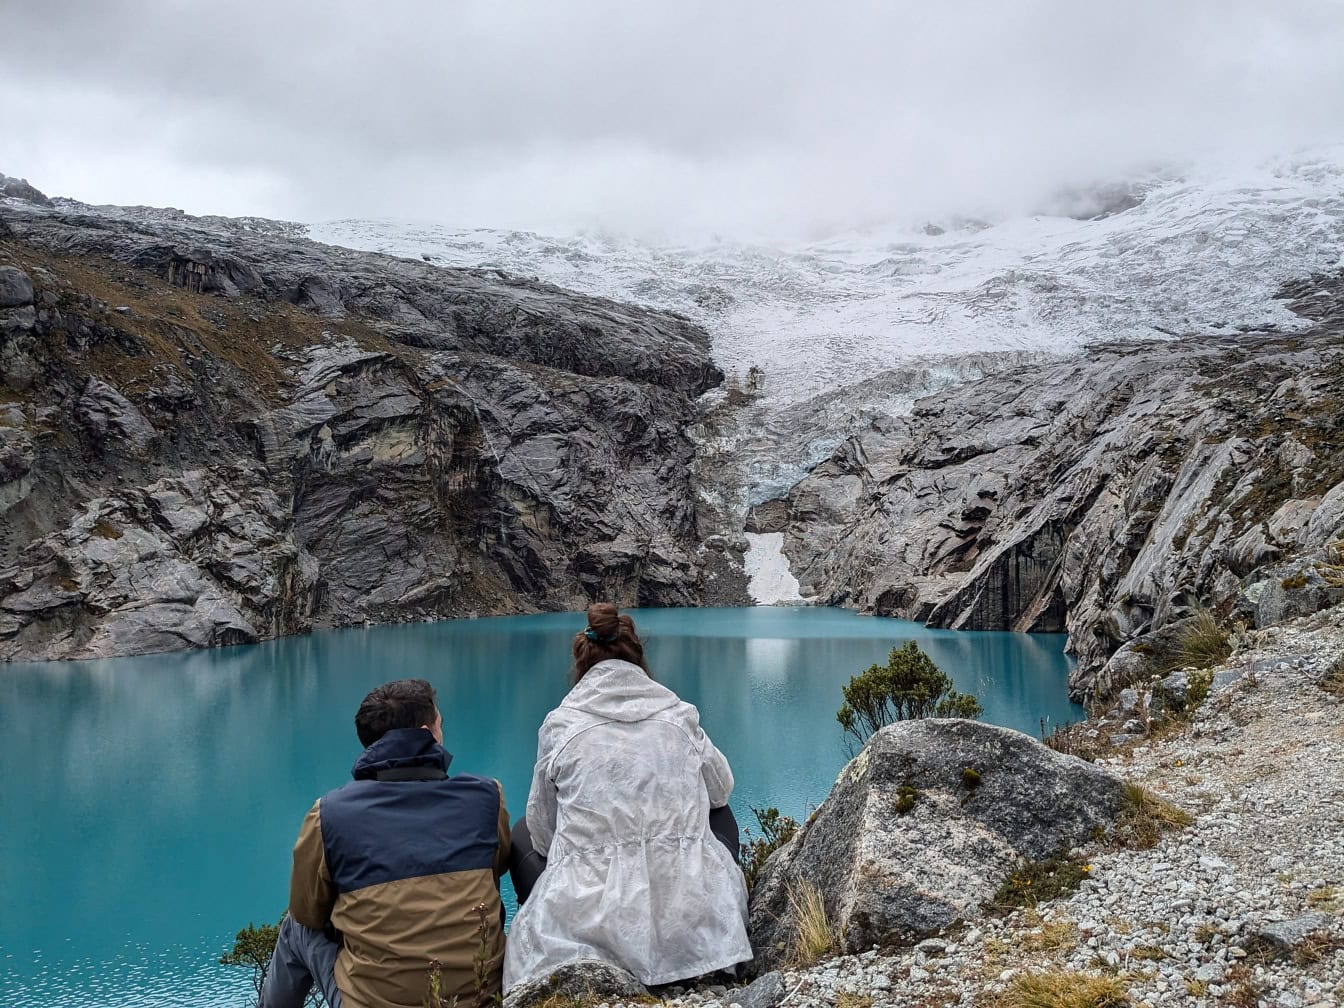 Mand og kvinde sidder på en bred af søen 513, en gletsjersø ved foden af Nevado Hualcan-bjerget i Huascaran nationalpark, Peru